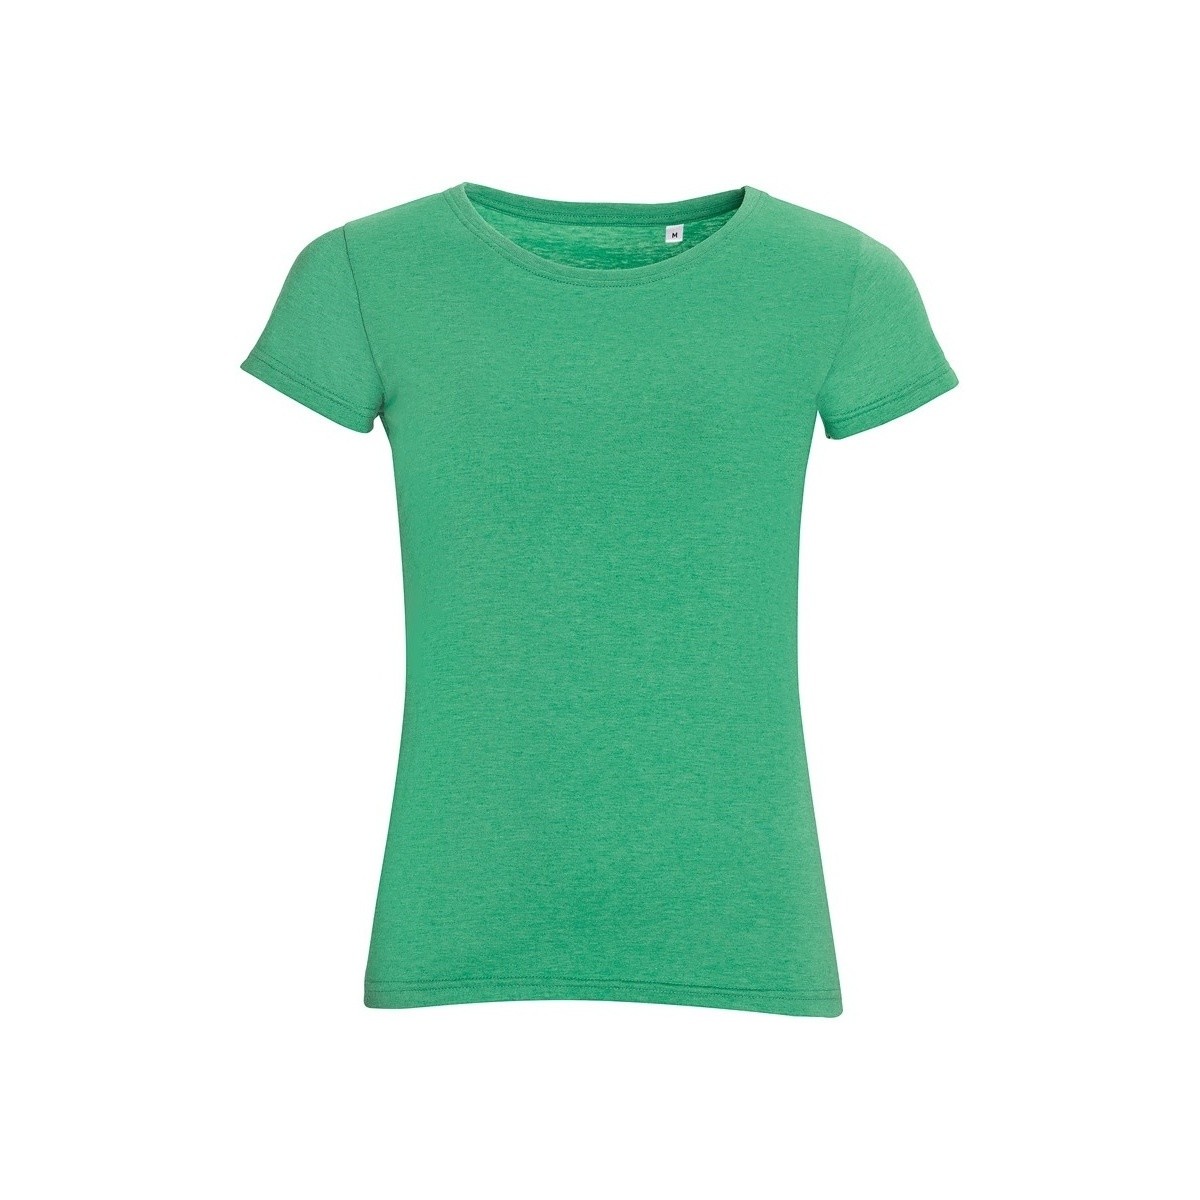 textil Mujer Camisetas manga corta Sols 01181 Verde